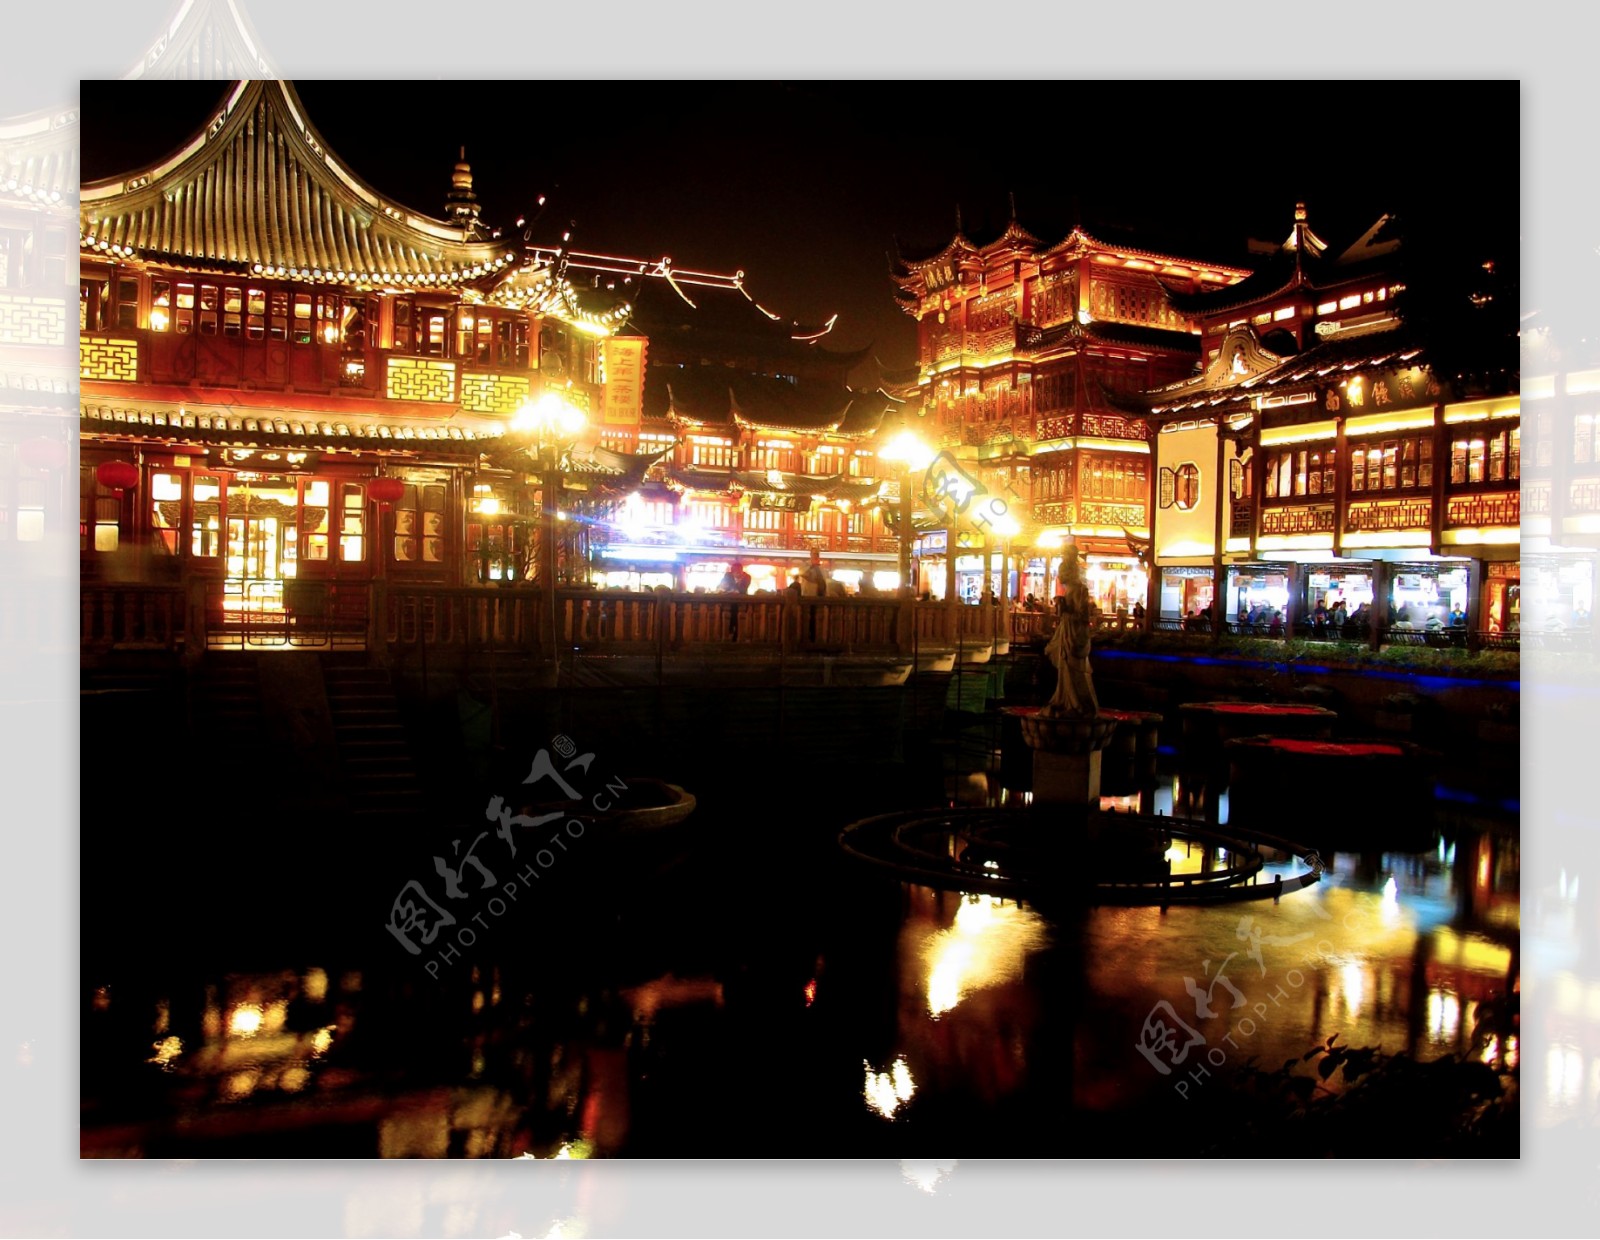 上海老城隍庙夜景图片